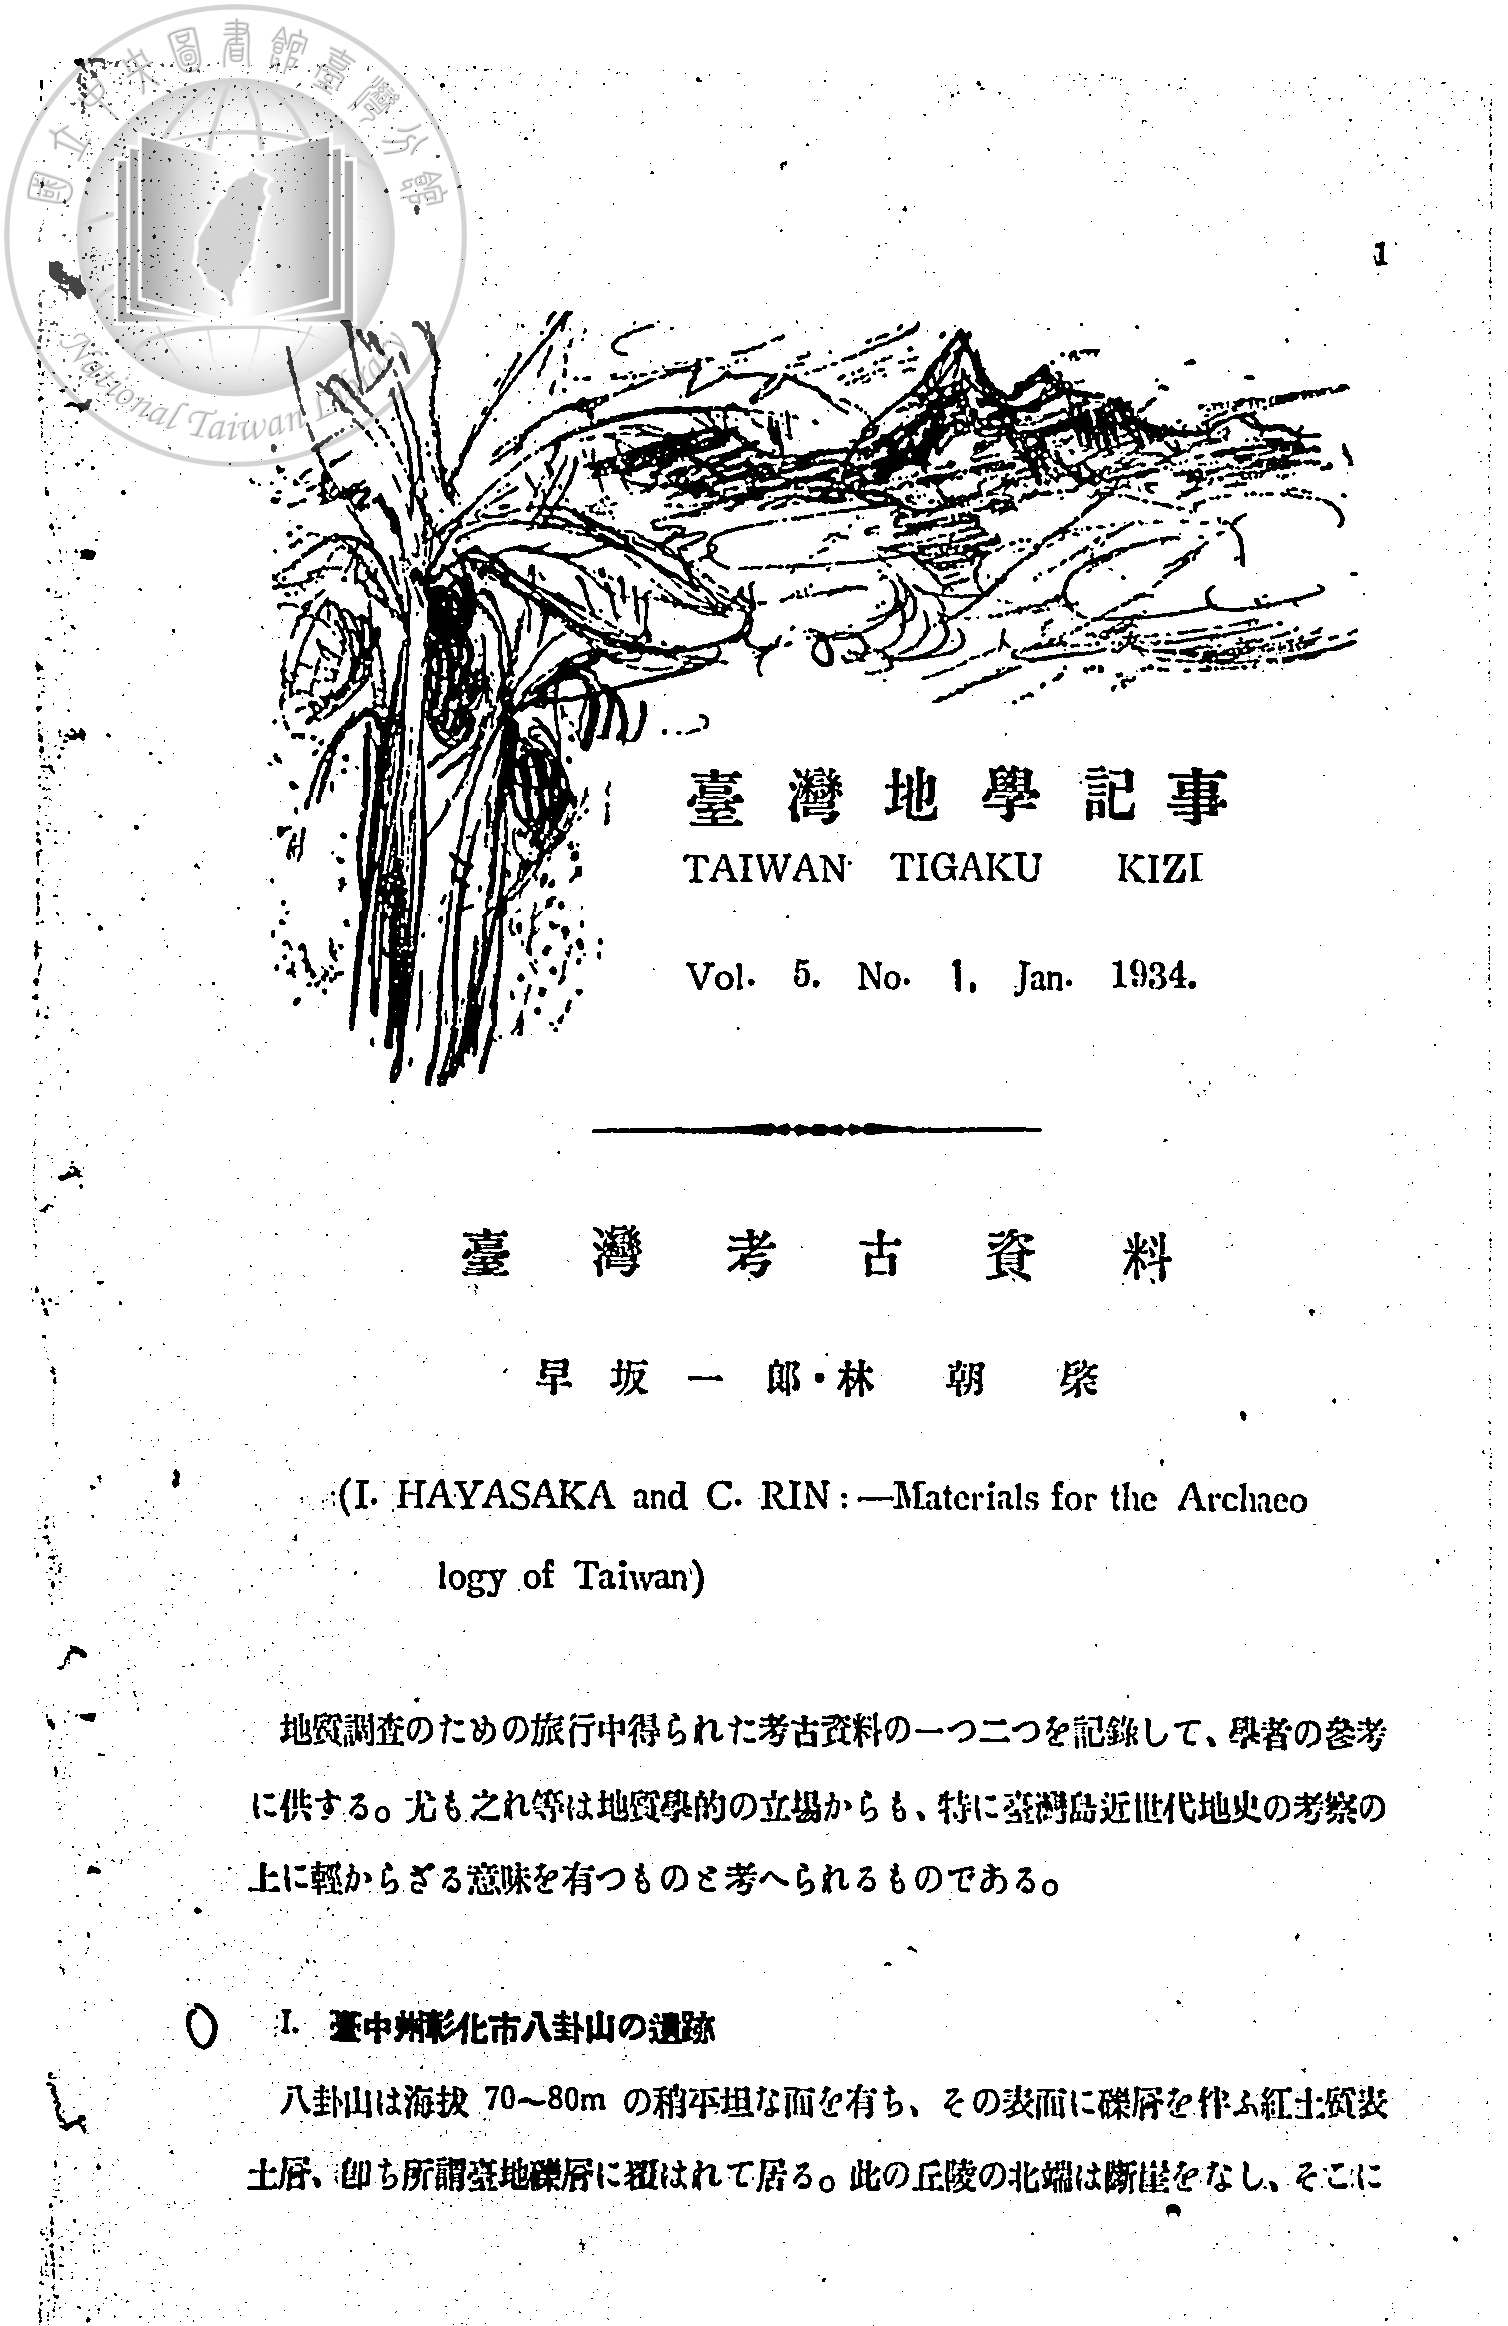 圖說：早坂一郎與林朝棨合著之〈臺灣考古資料〉（1934）
資料提供：國立臺灣圖書館